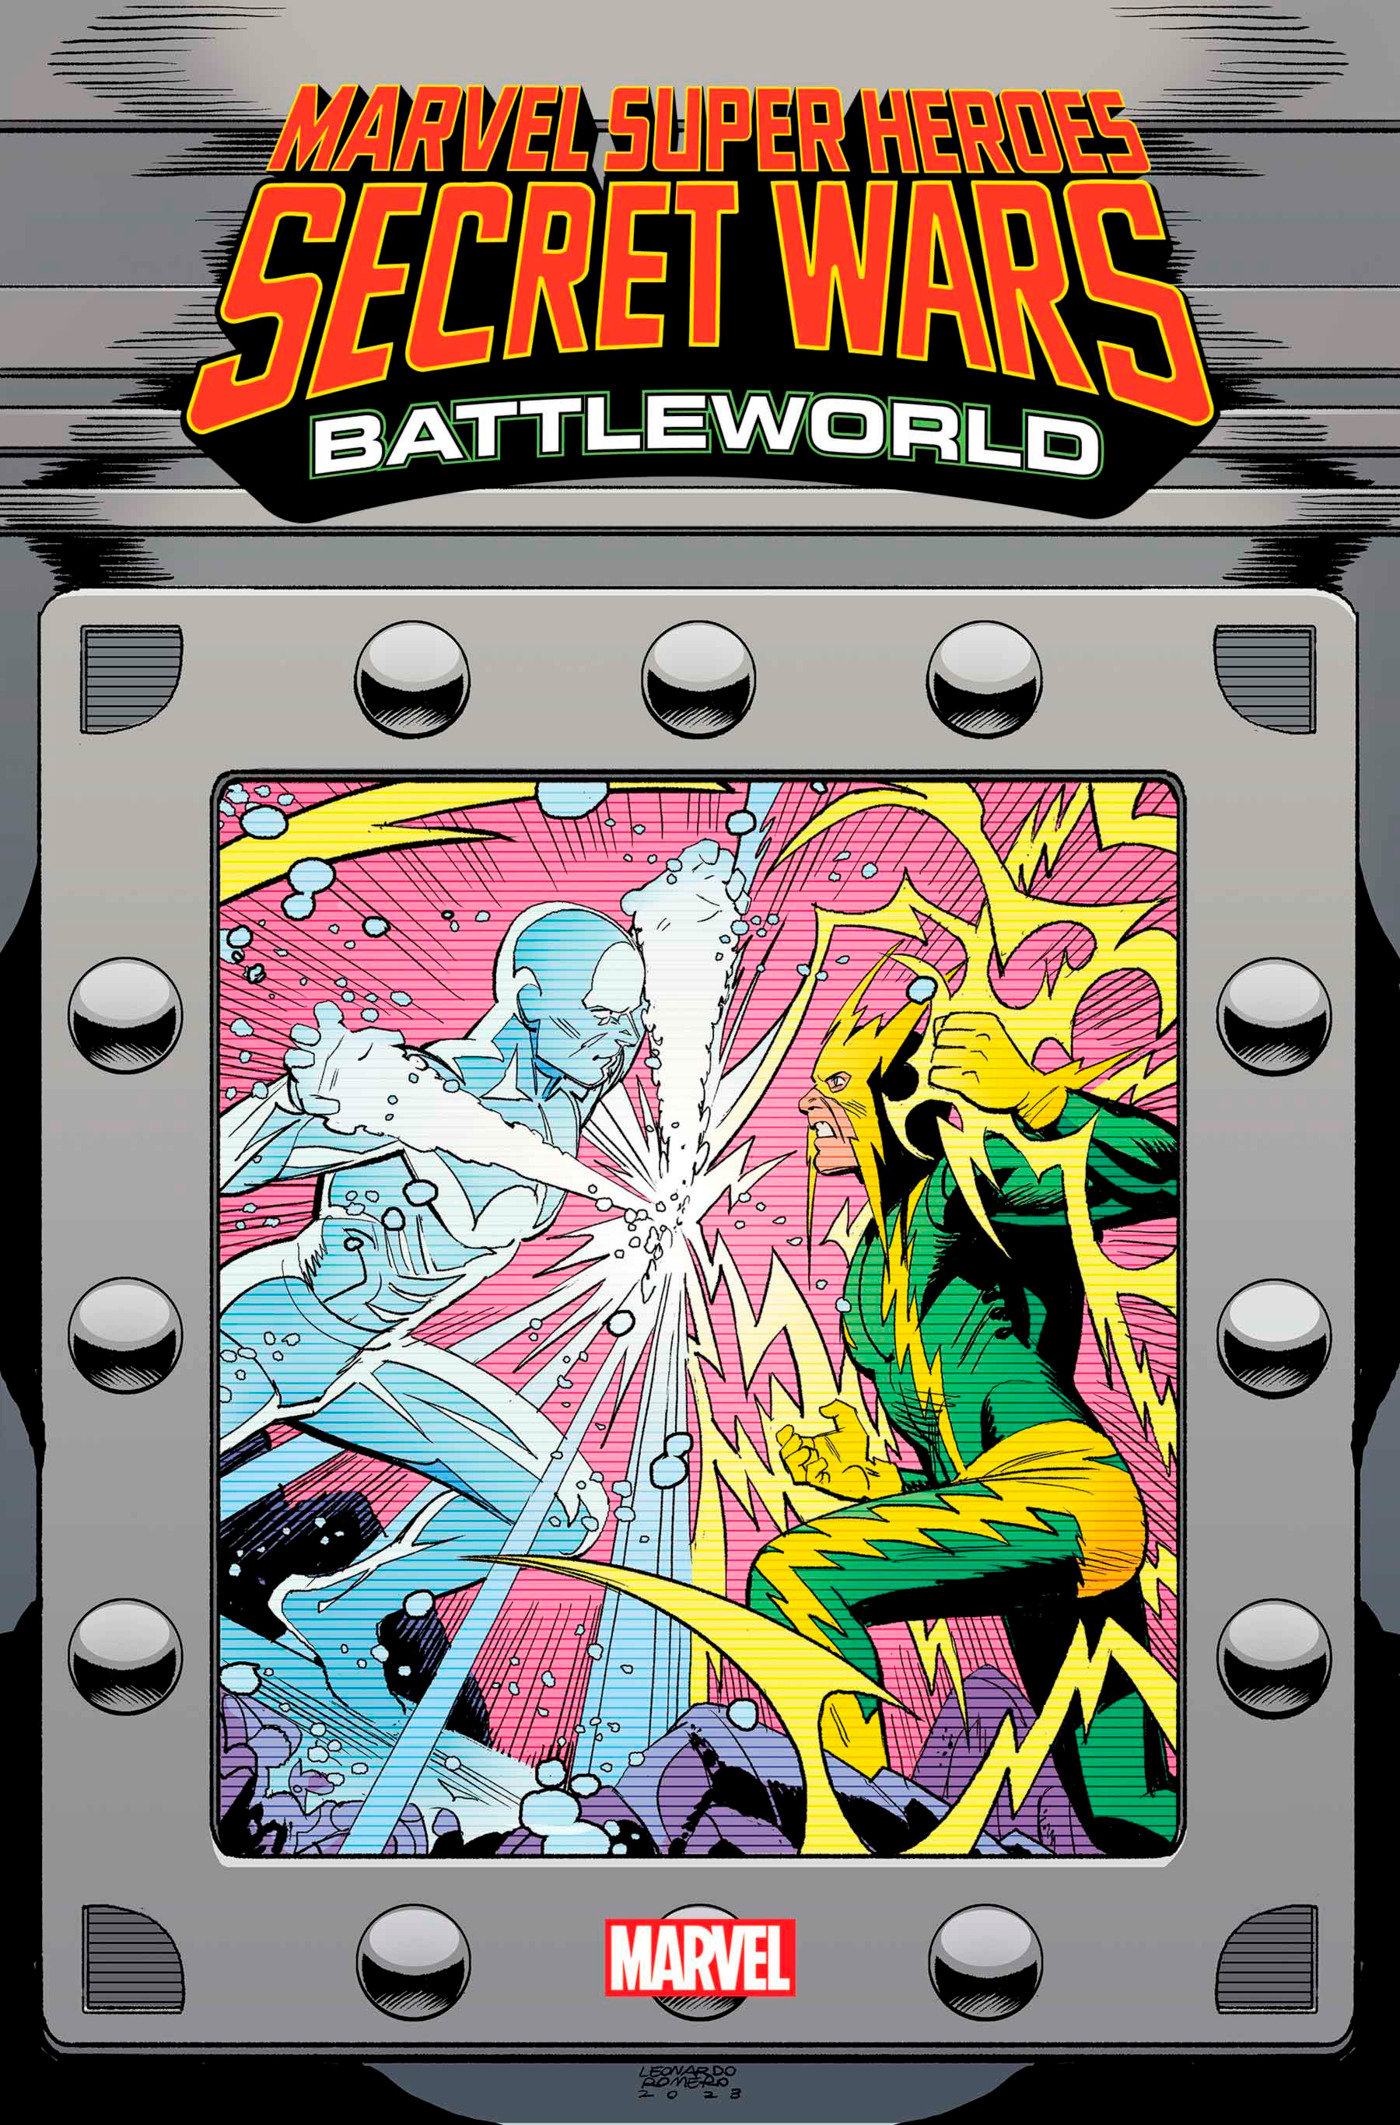 Marvel Super Heroes Secret Wars: Battleworld #4 Leonardo Romero Variant